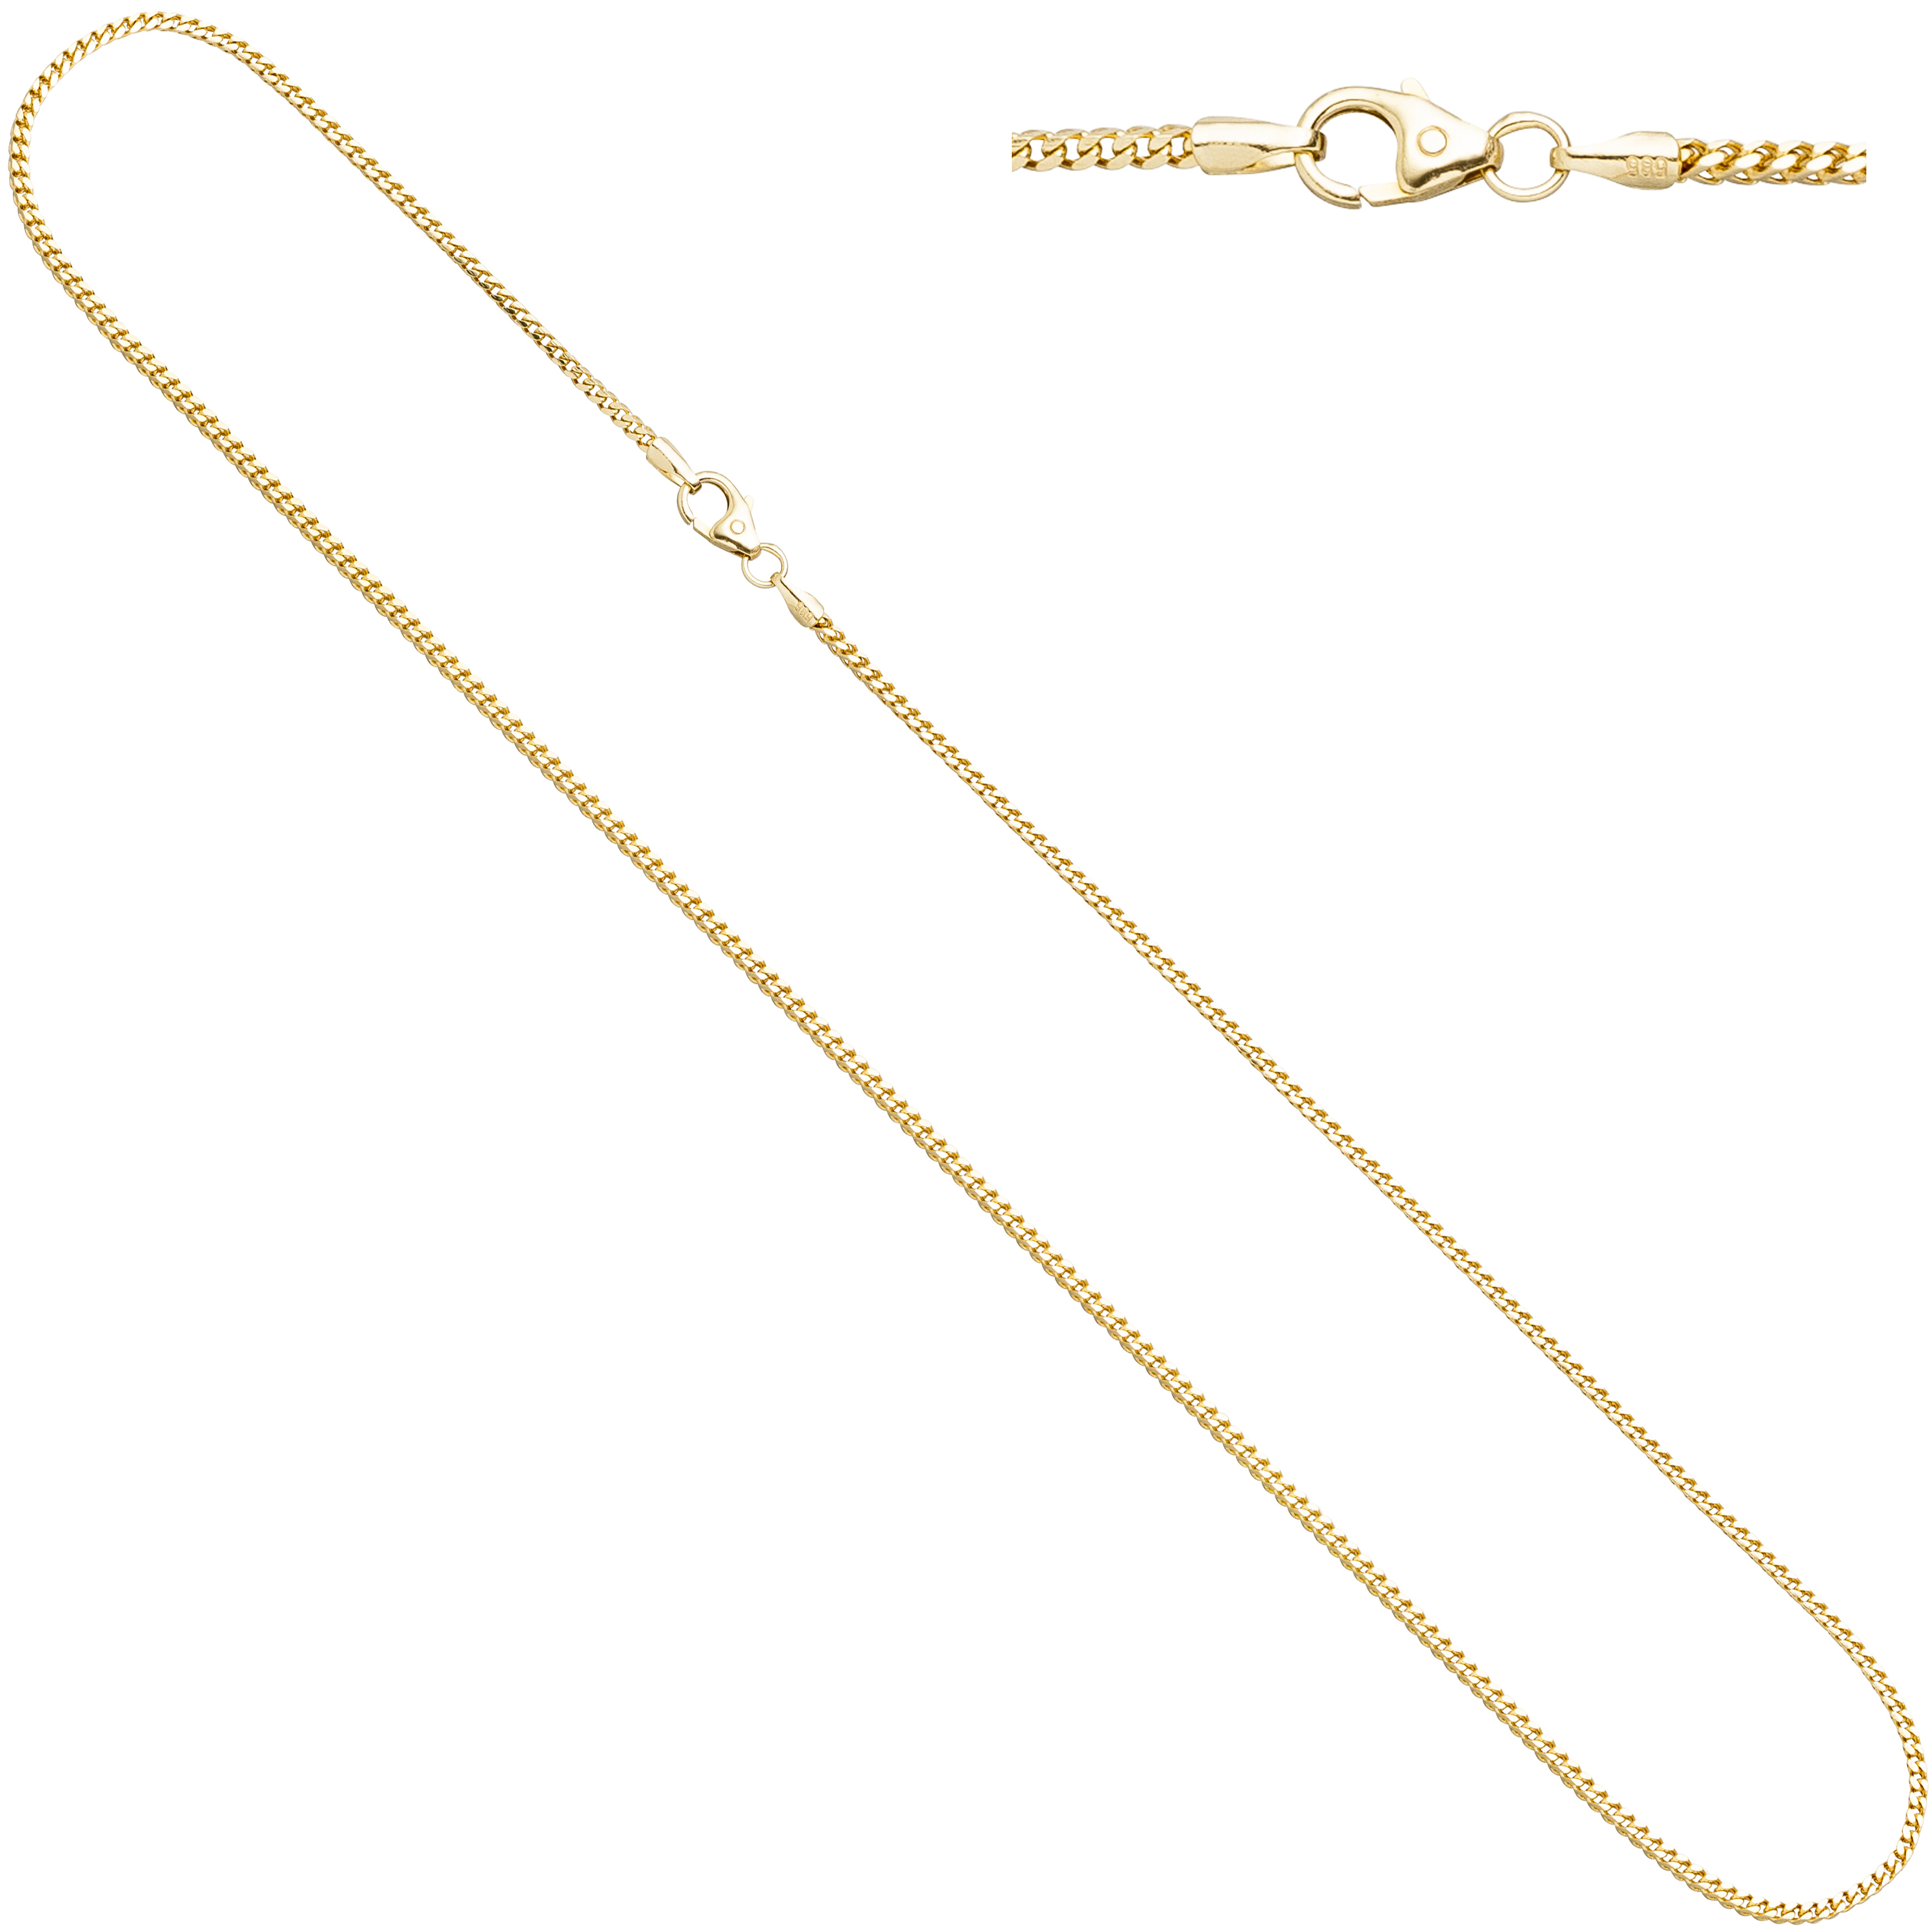 Ankerkette 333 Gelbgold diamantiert 1,2 mm 42 cm Gold Kette Halskette Karabiner